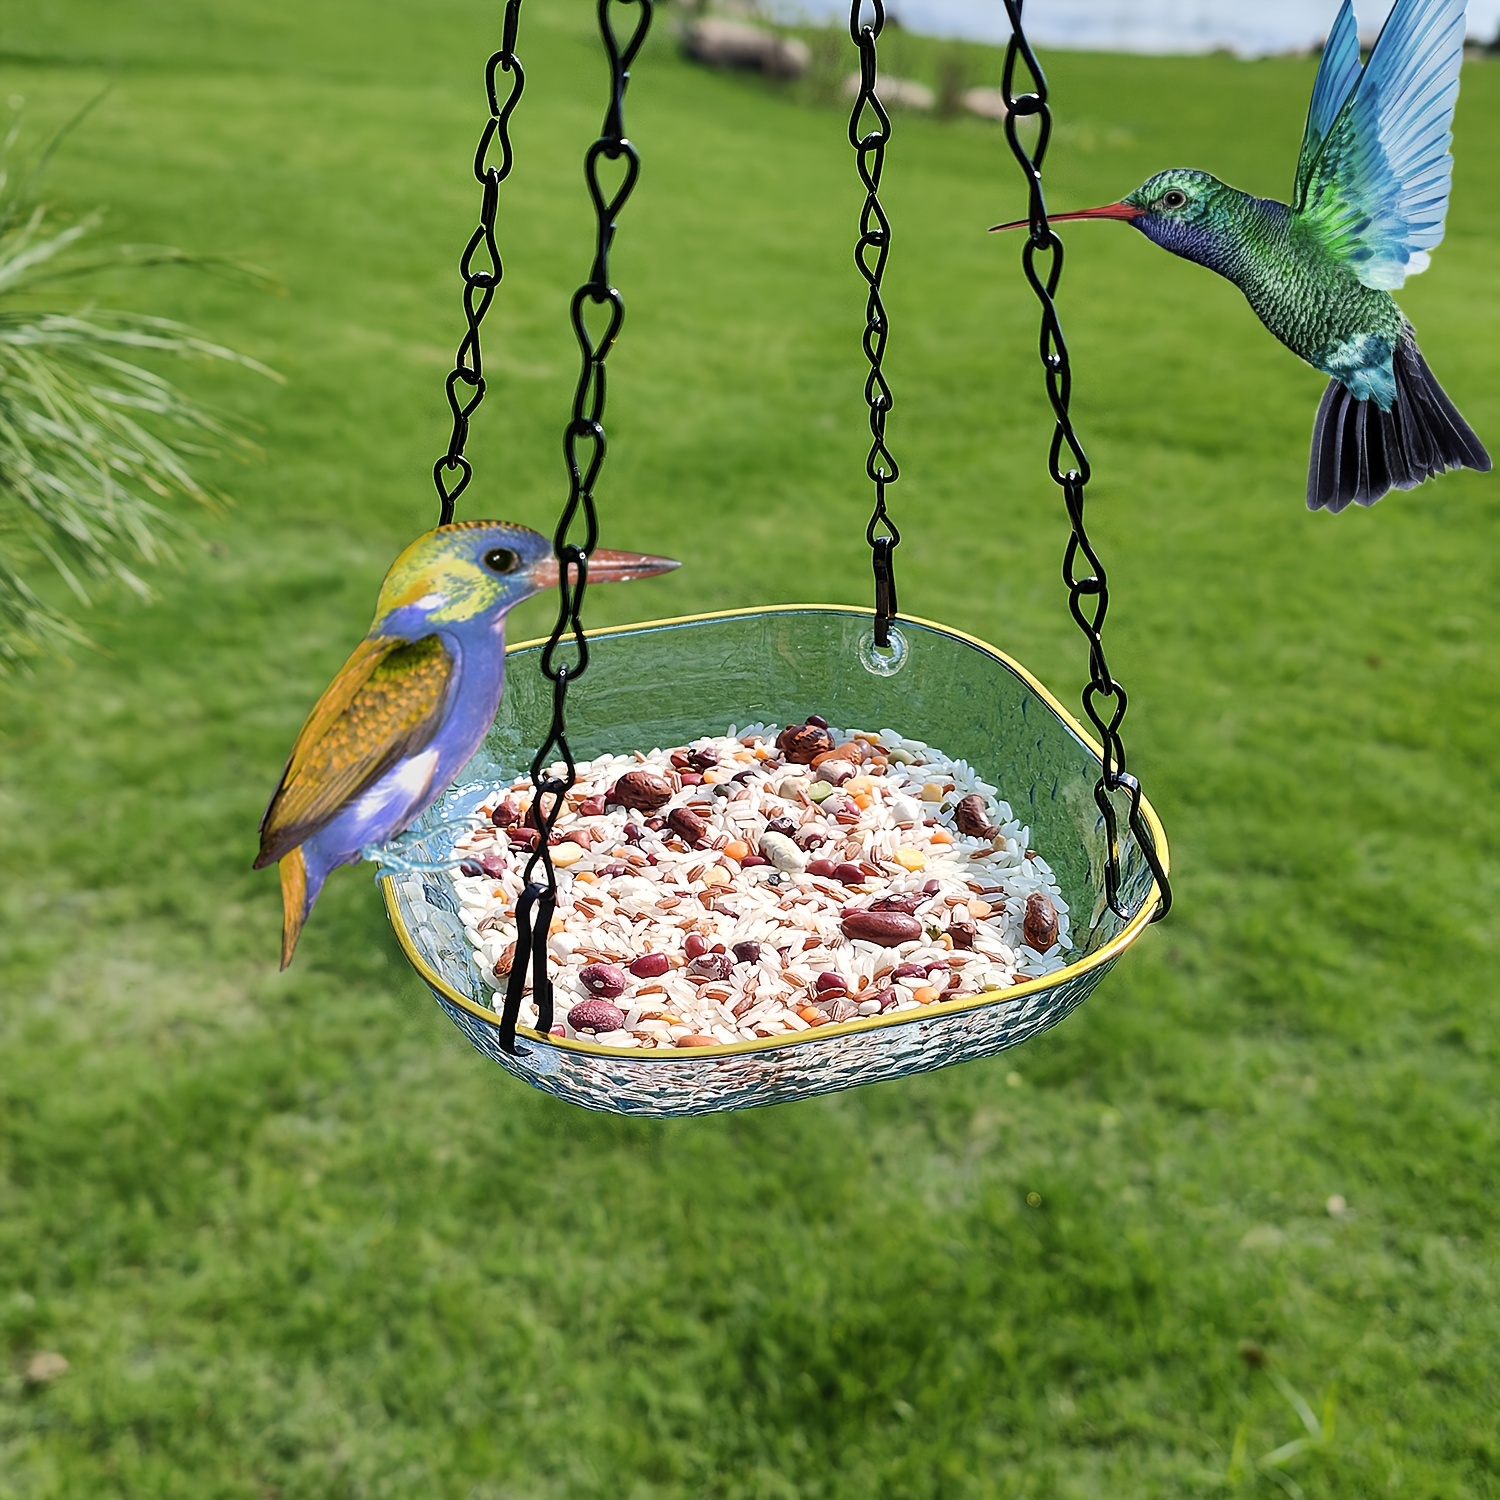 

Hanging Bird Bath Feeding Tray, Outdoor Garden Decor, Dual-use Water Feeder For Bird Patio Balcony, Decorative Bird Bath Bowl